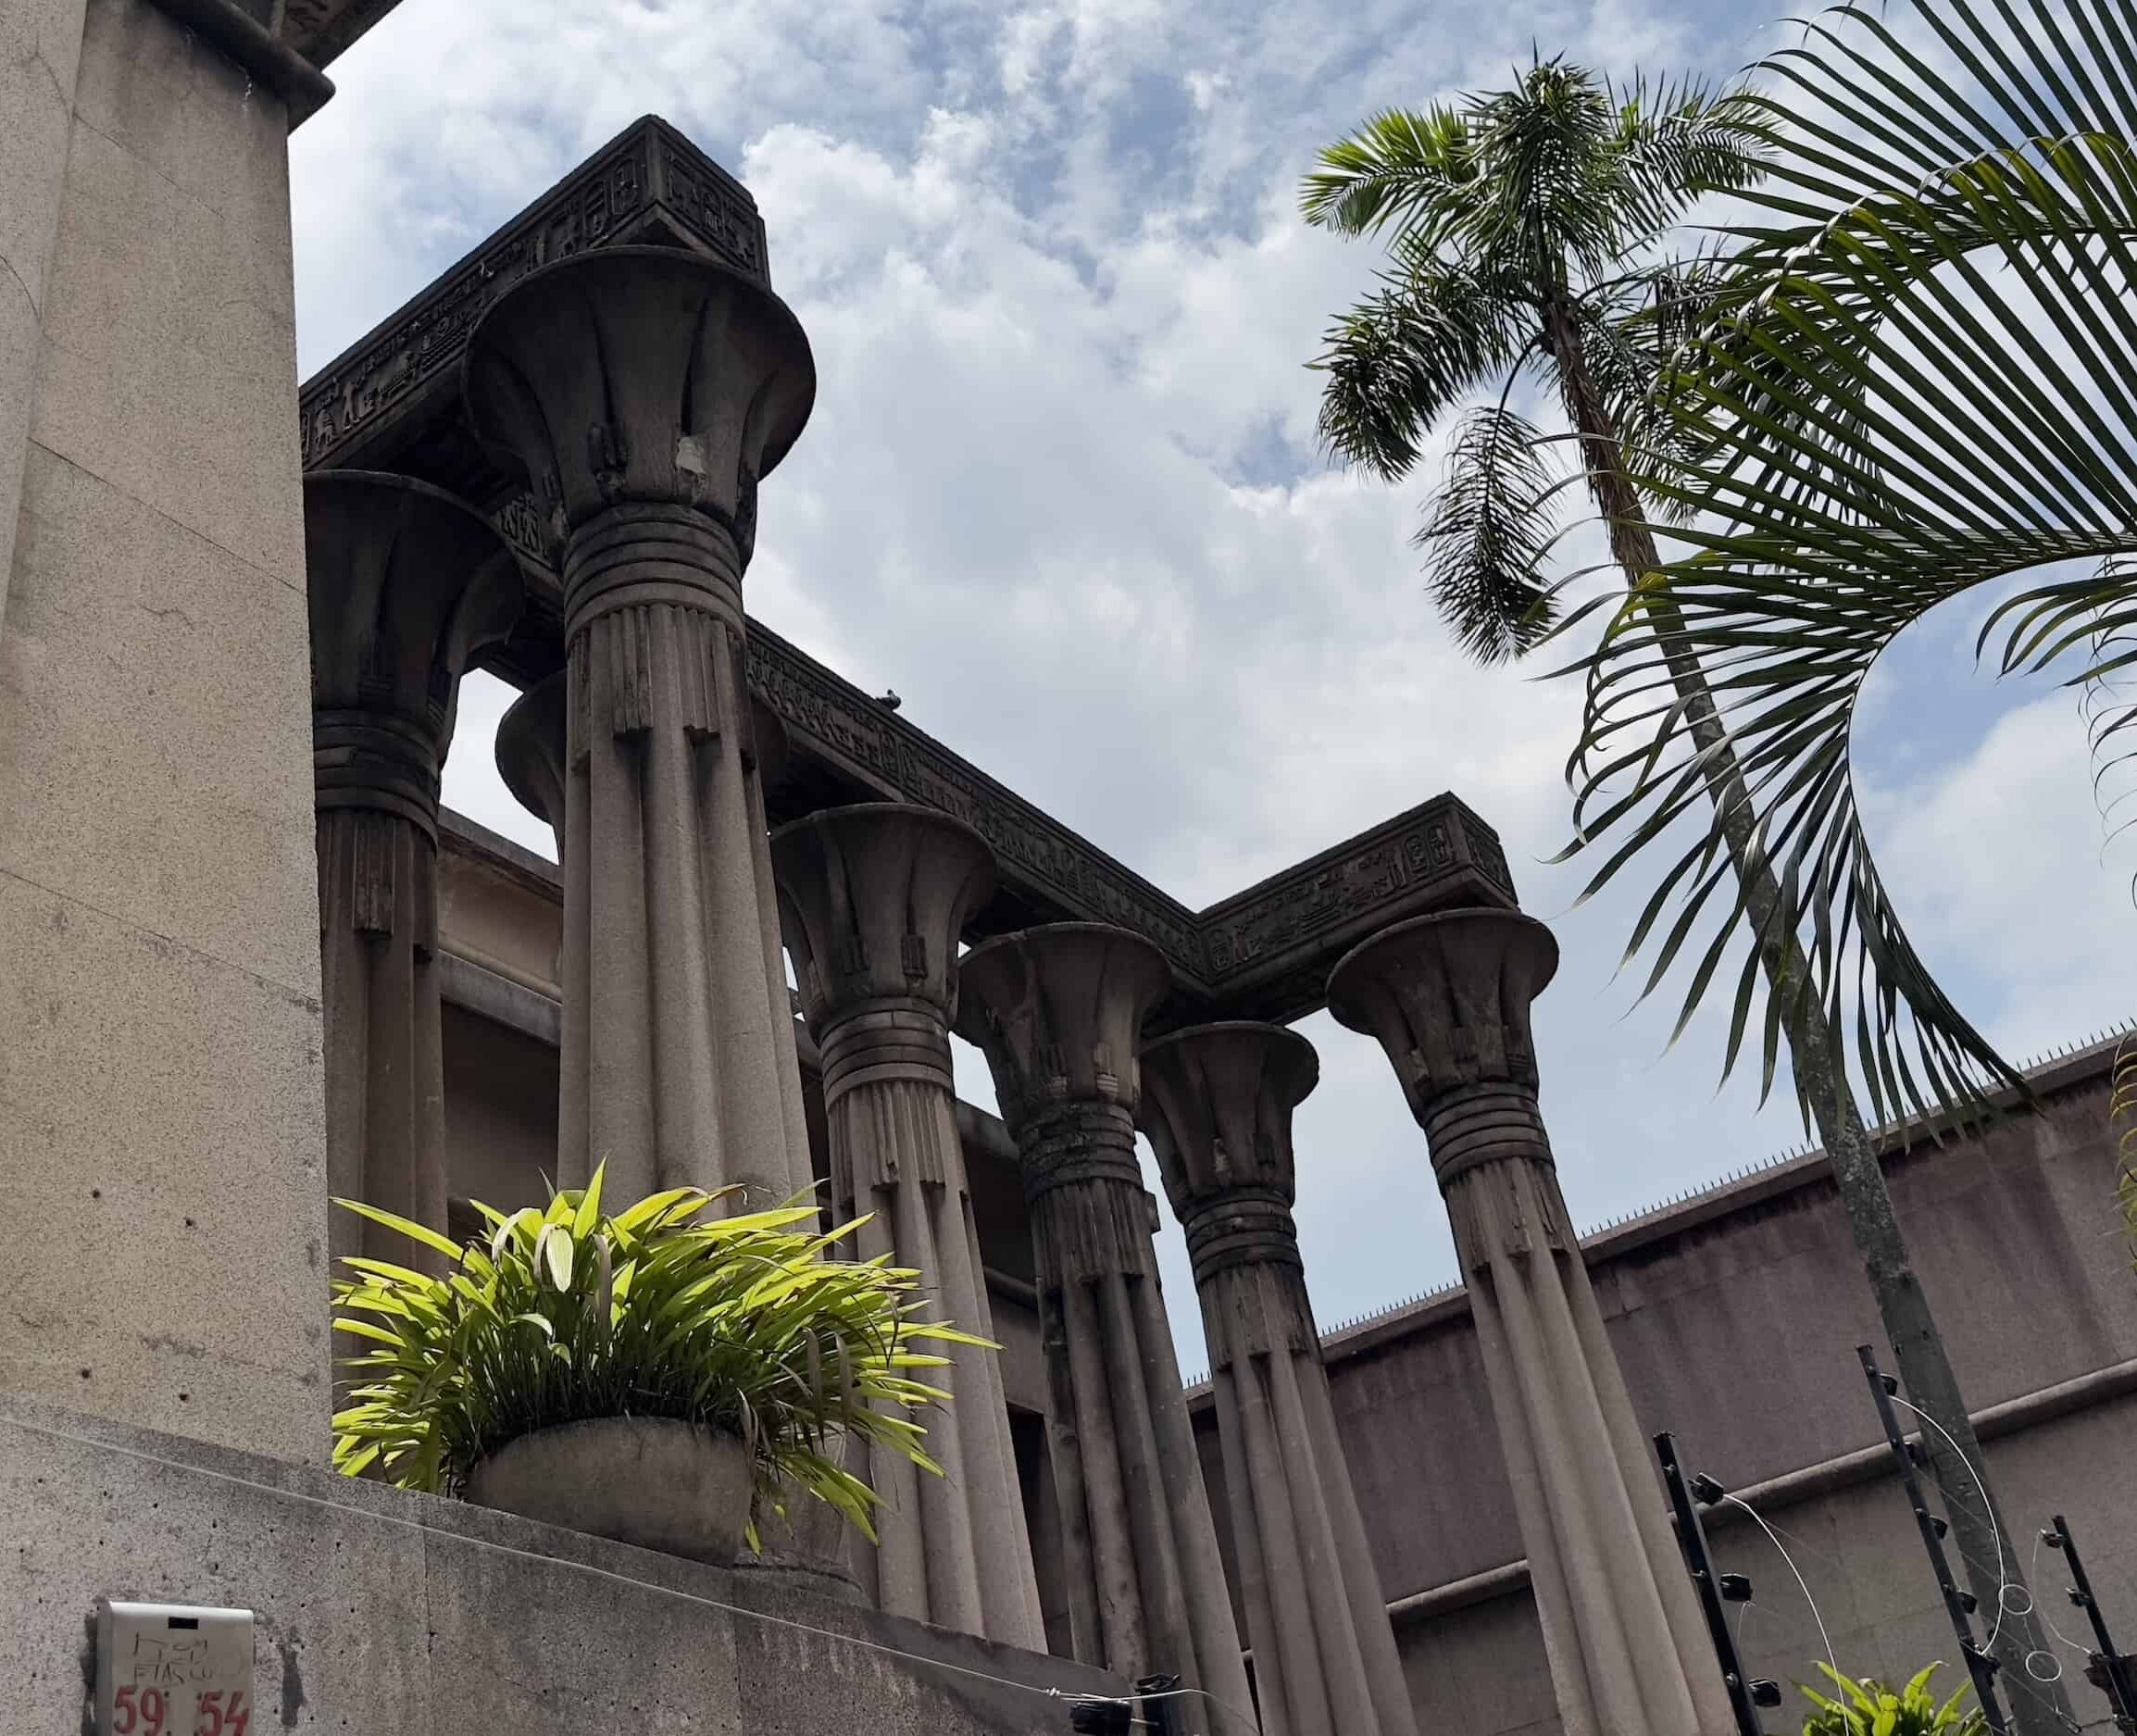 Egyptian Palace in Prado, El Centro, Medellín, Colombia